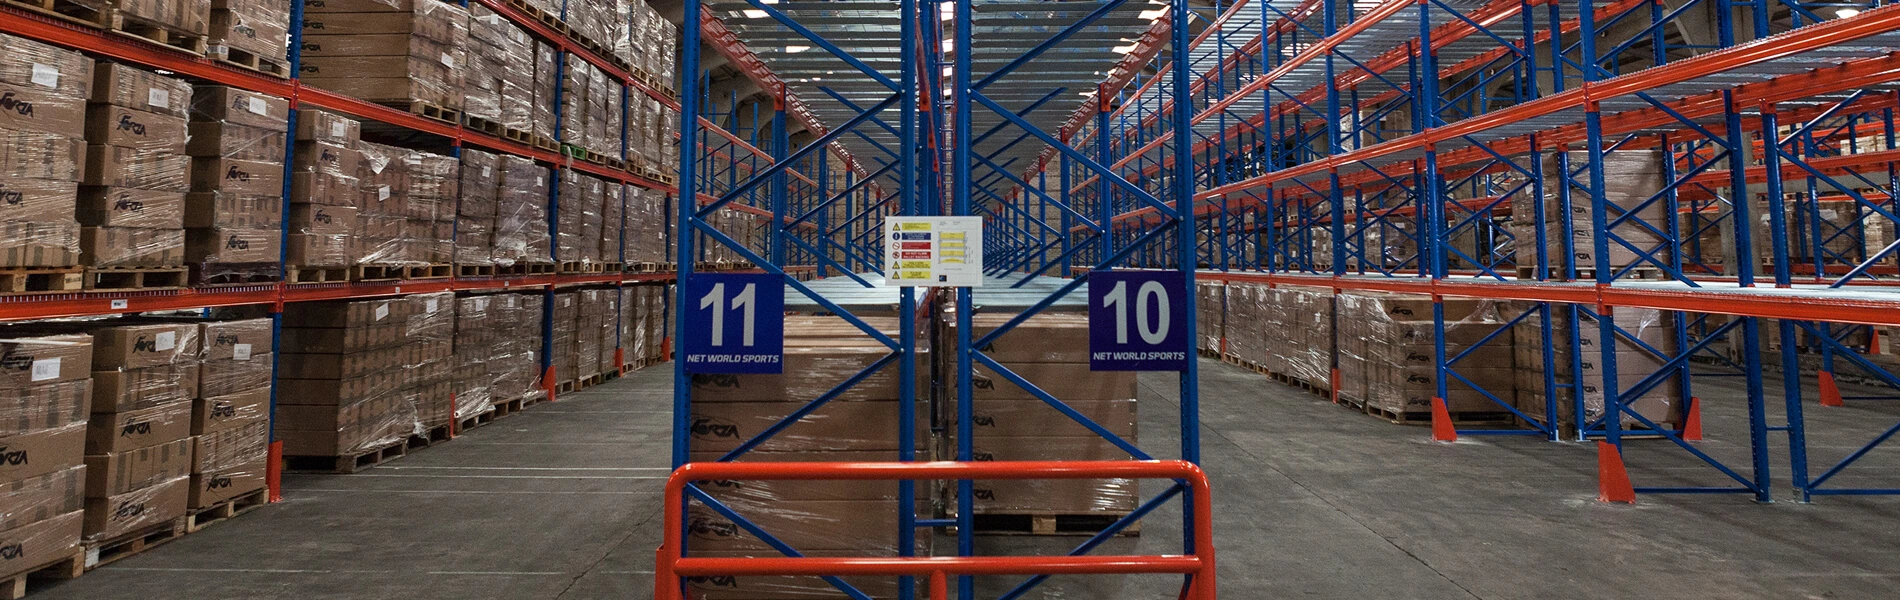 storage rack supplier in delhi